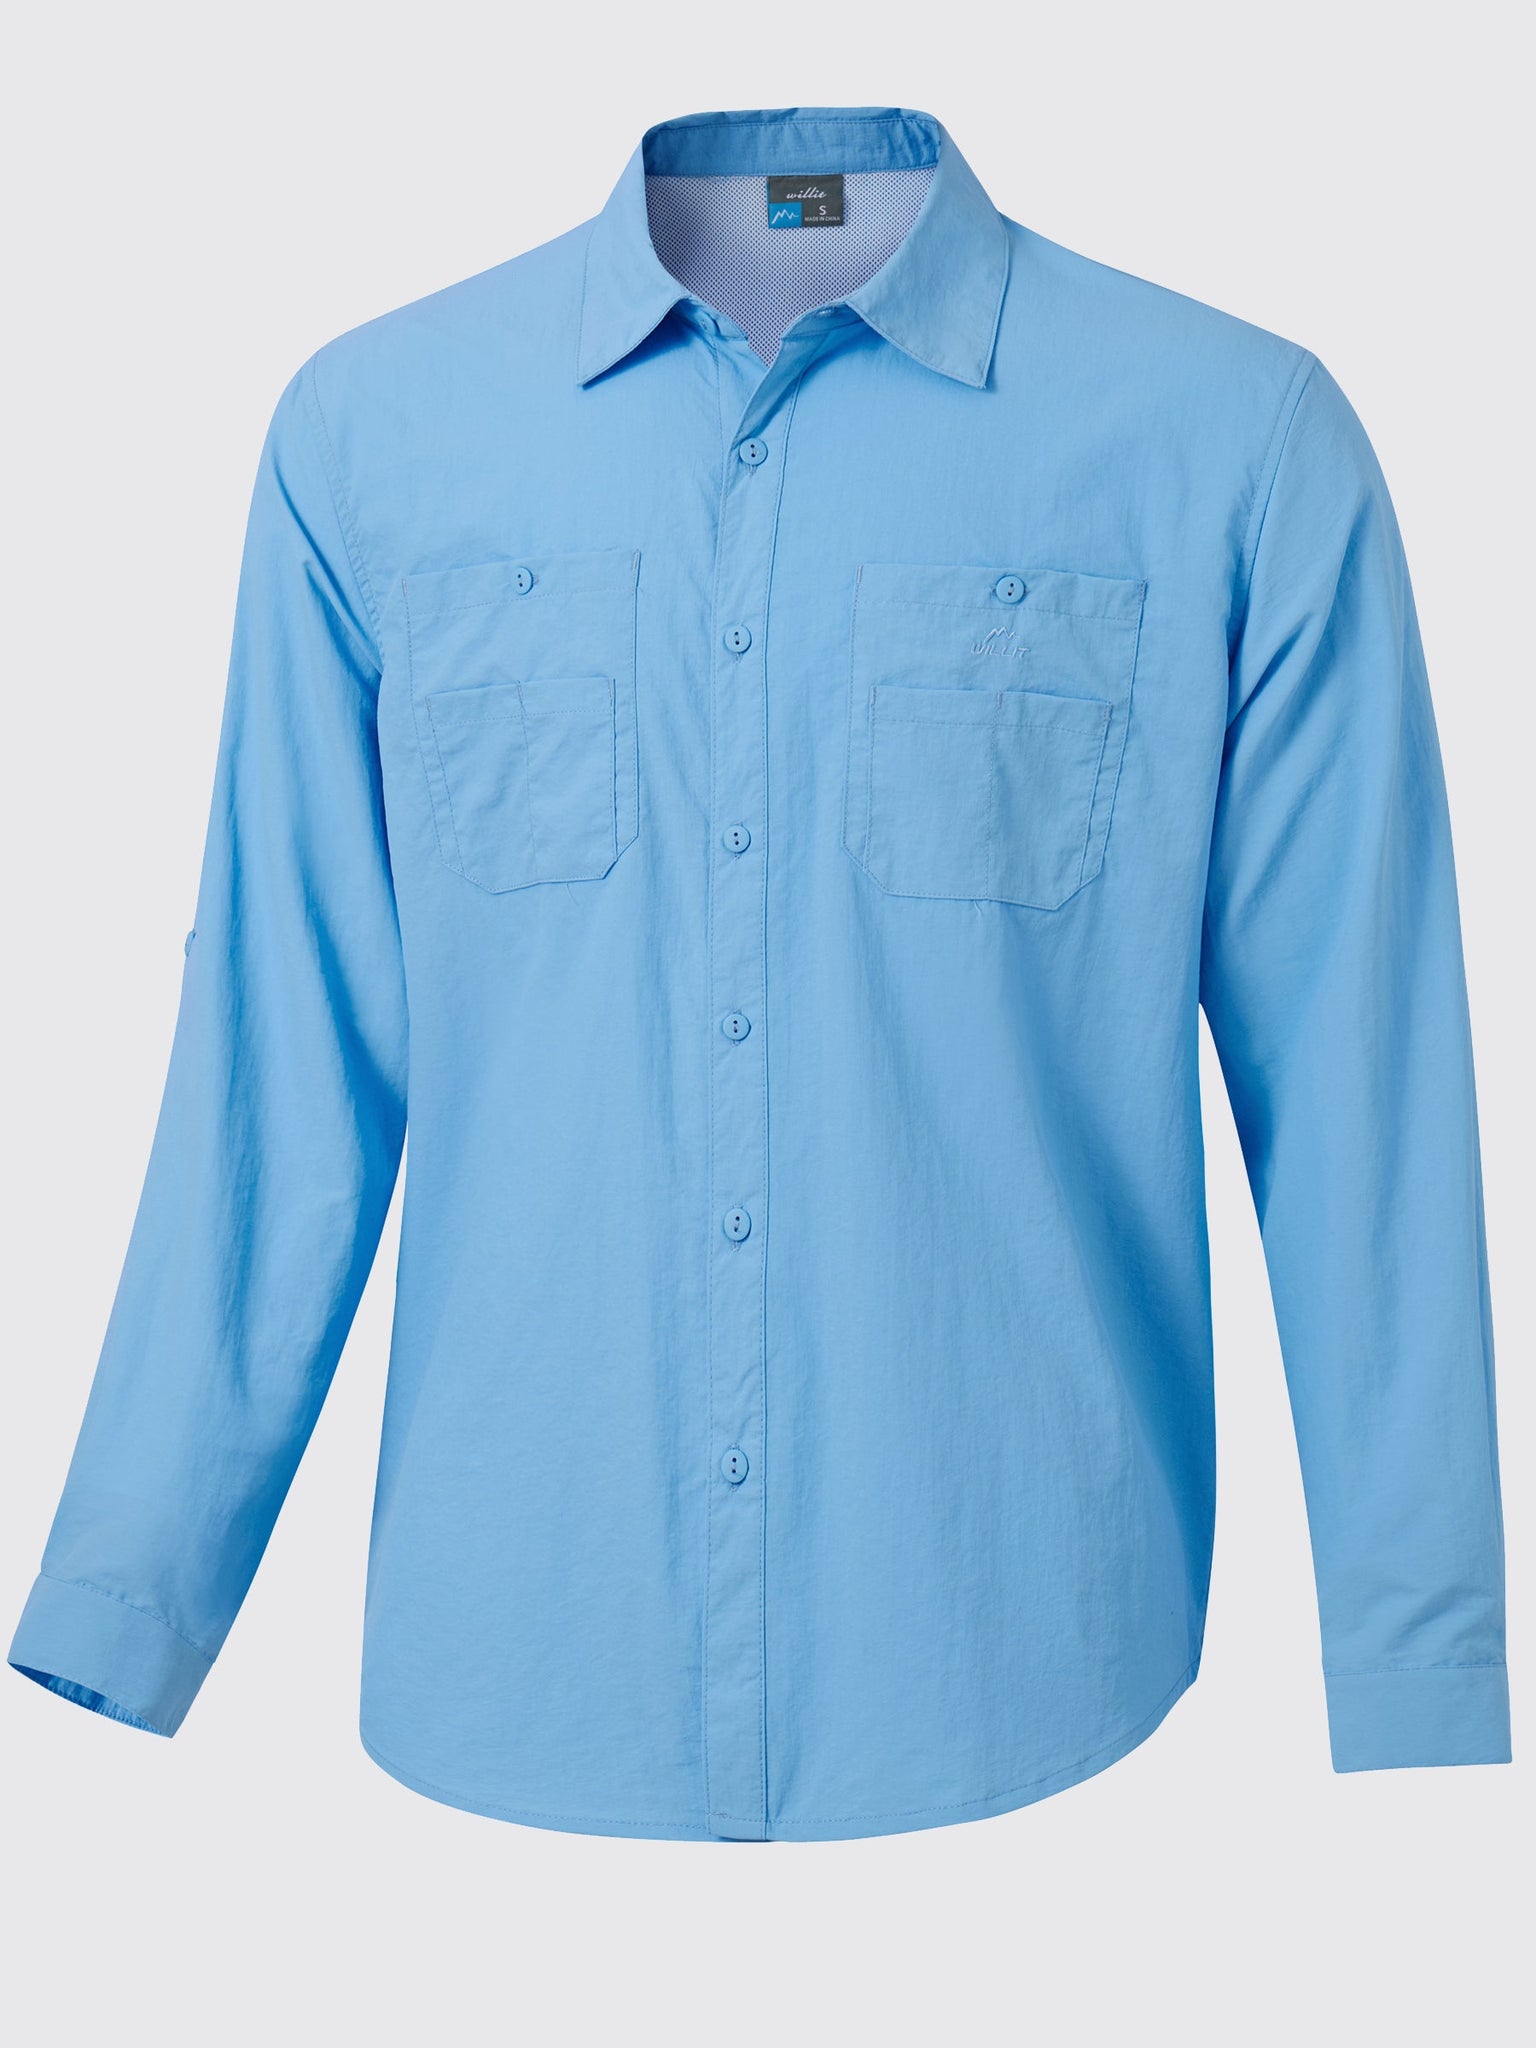 Men's Fishing Shirt Long Sleeve Hiking Shirts_Blue1